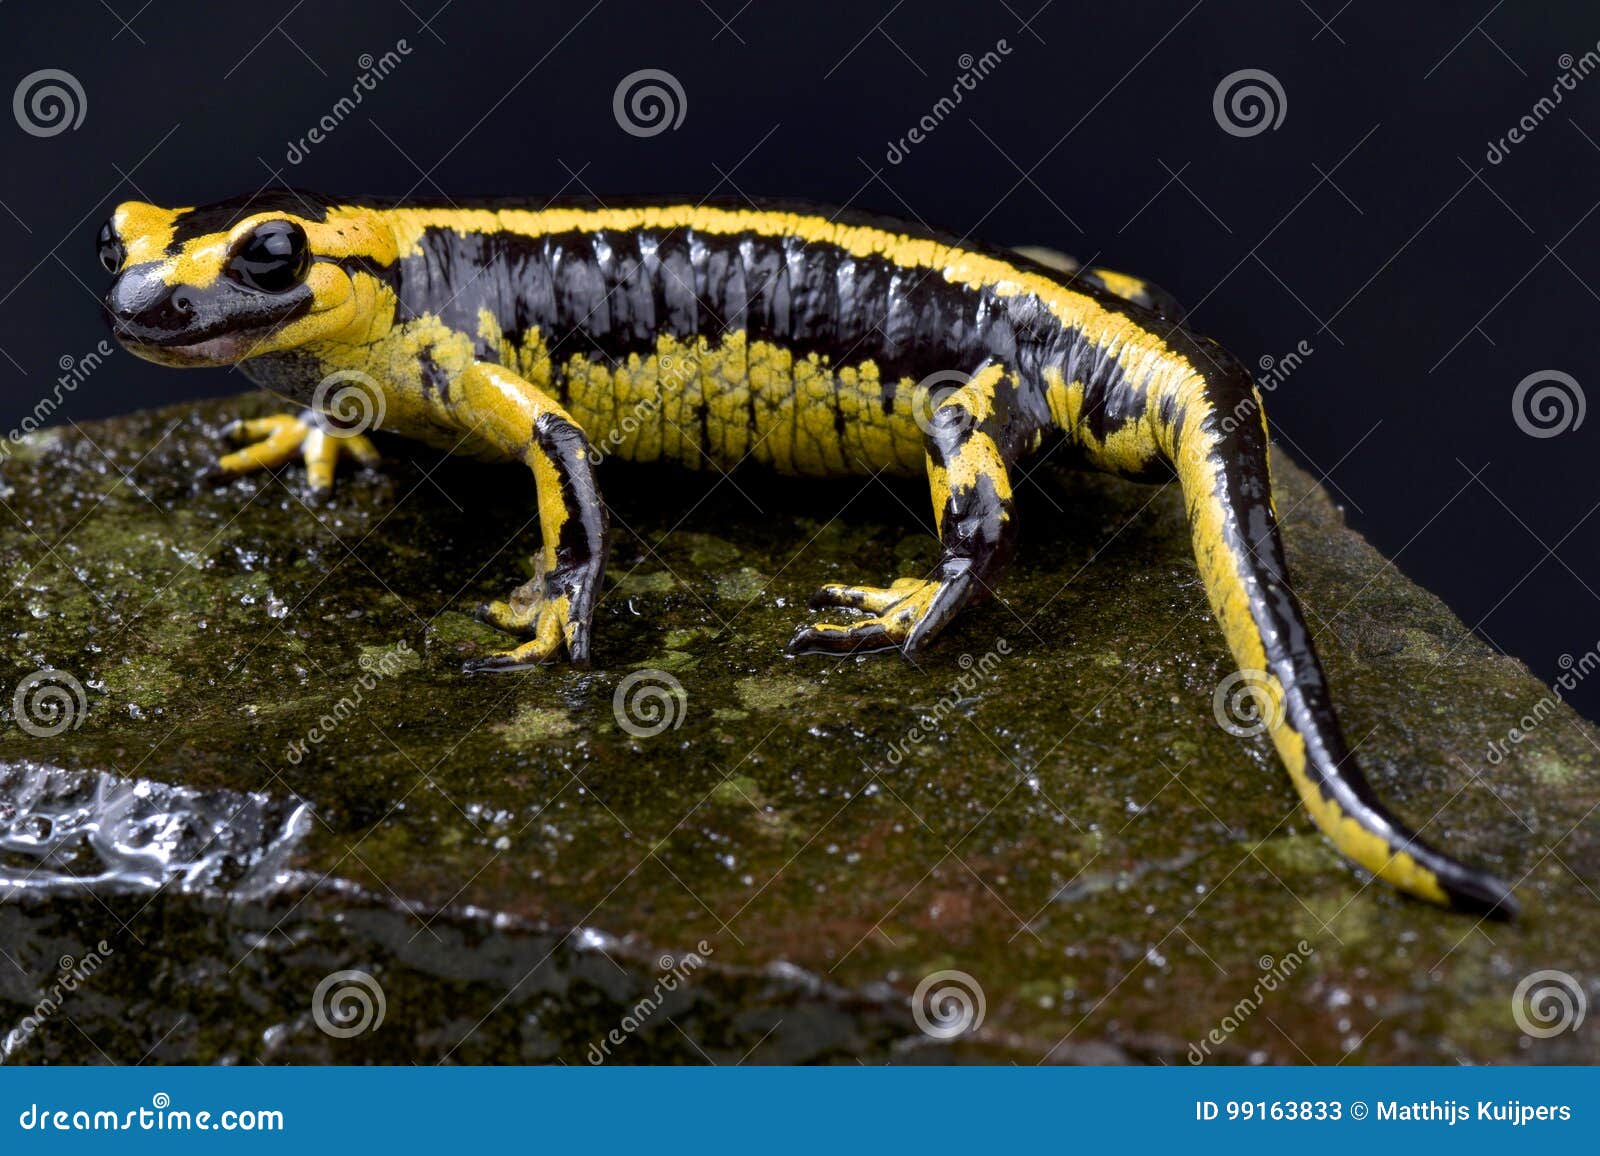 galician fire salamander, salamandra salamandra bernardezi